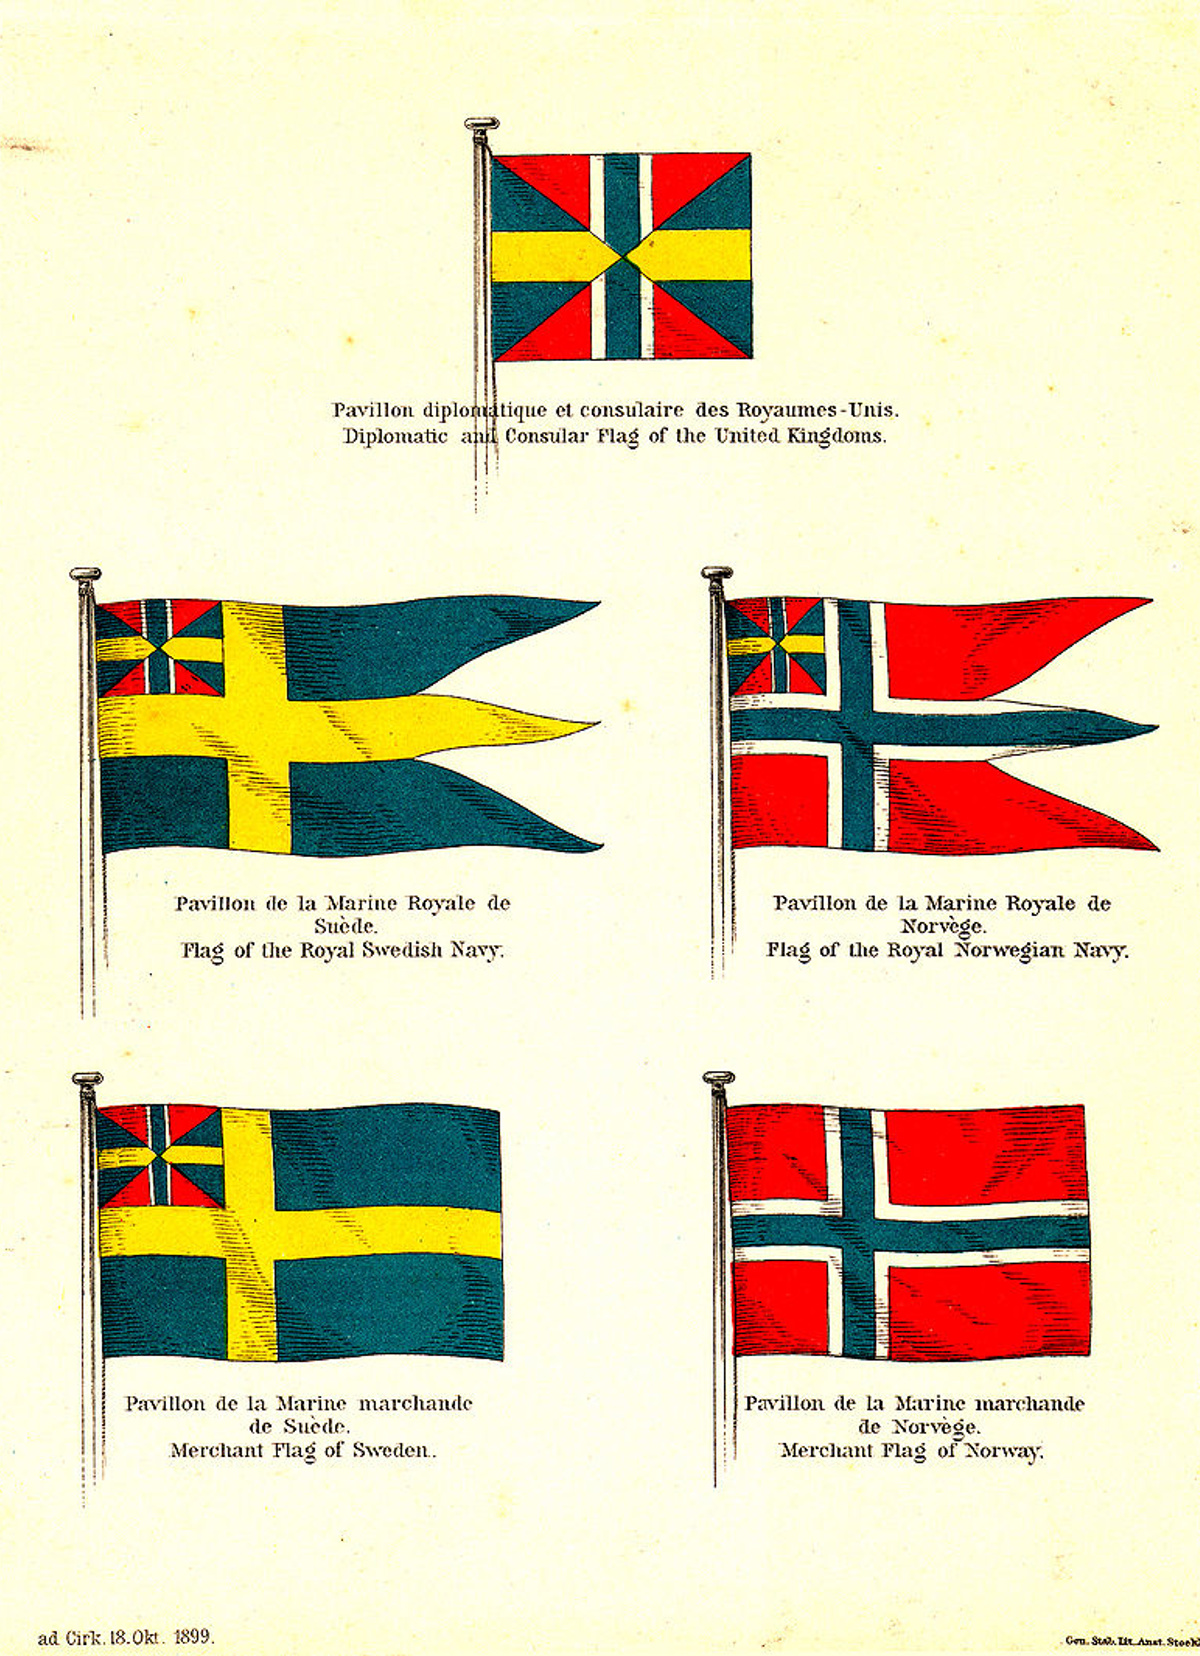 Fem flagg. Det er to varianter av et flagg med fargene rødt, hvitt og blått. Det er to varianter av flagg med fargene blått og gult. Begge har innslag av  farger fra det andre flagget. Et av flaggene er en kombinasjon av begge flaggene, med de samme fargene likt representert.